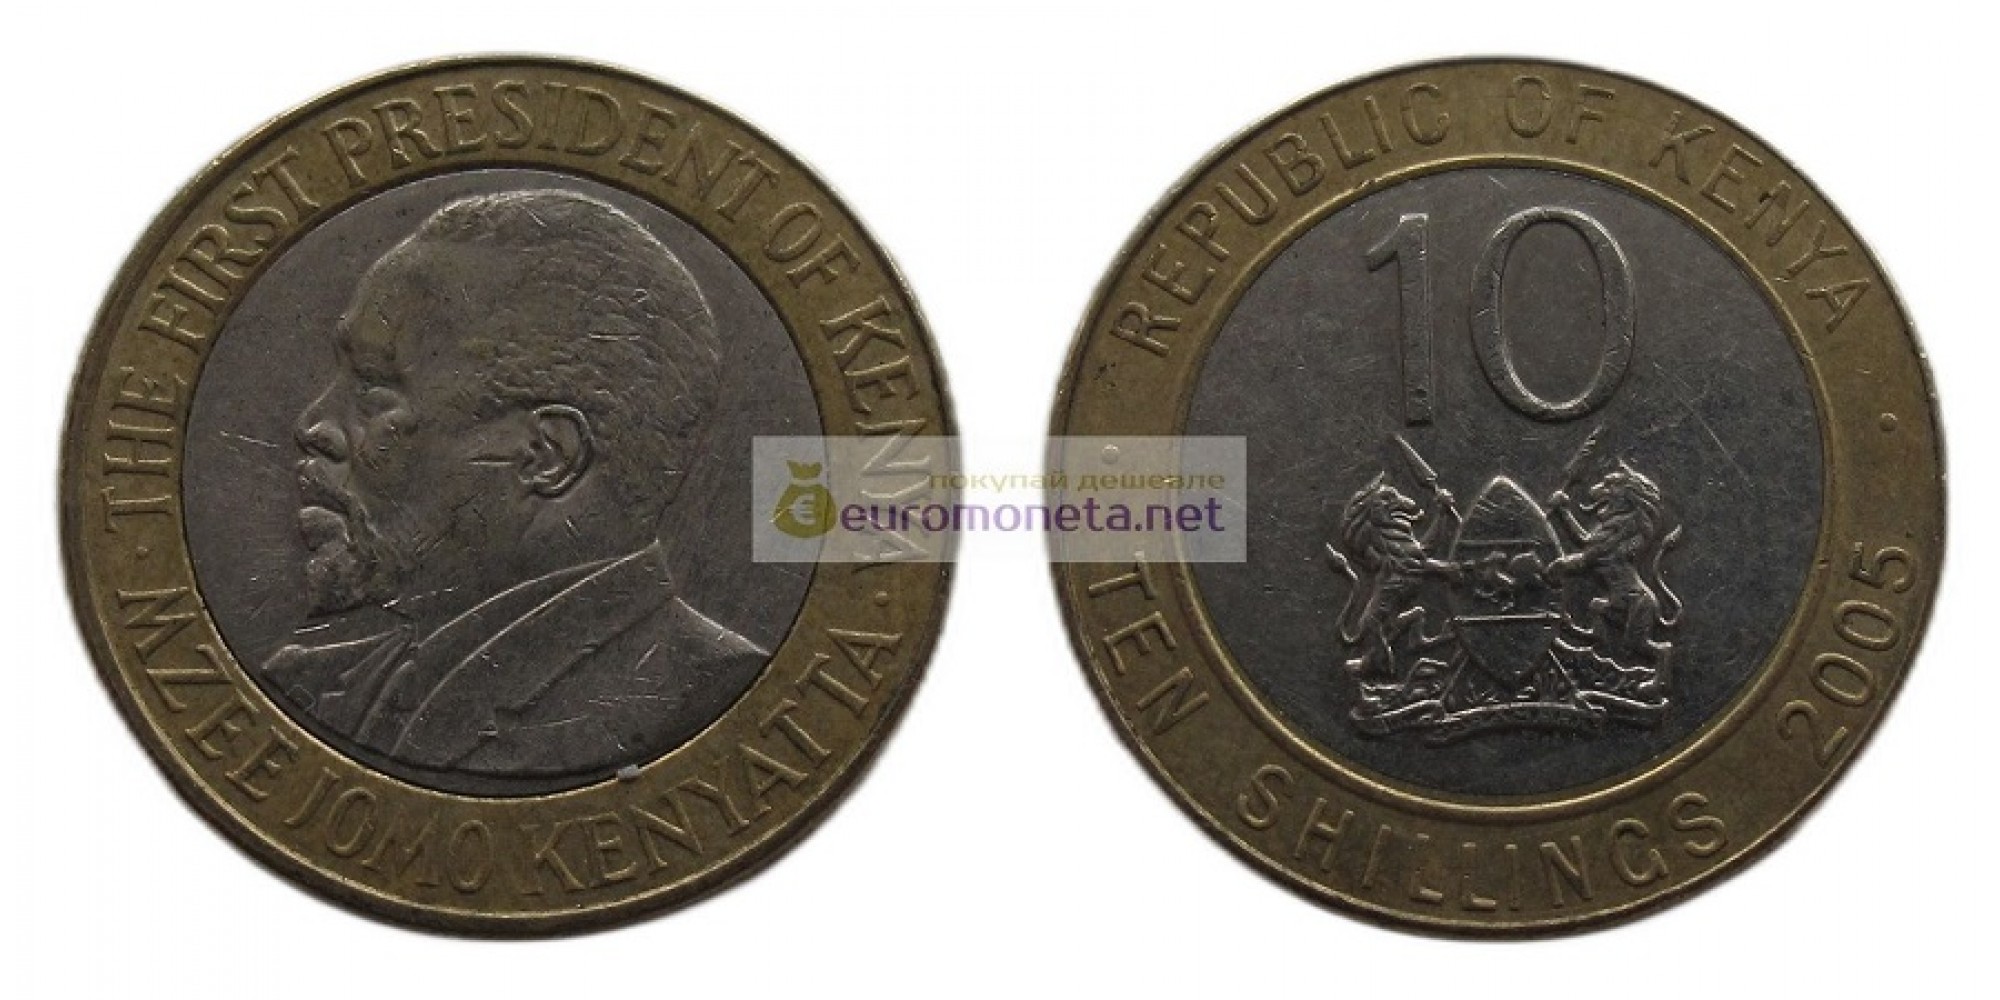 Республика Кения 10 шиллингов 2005 год. Биметалл